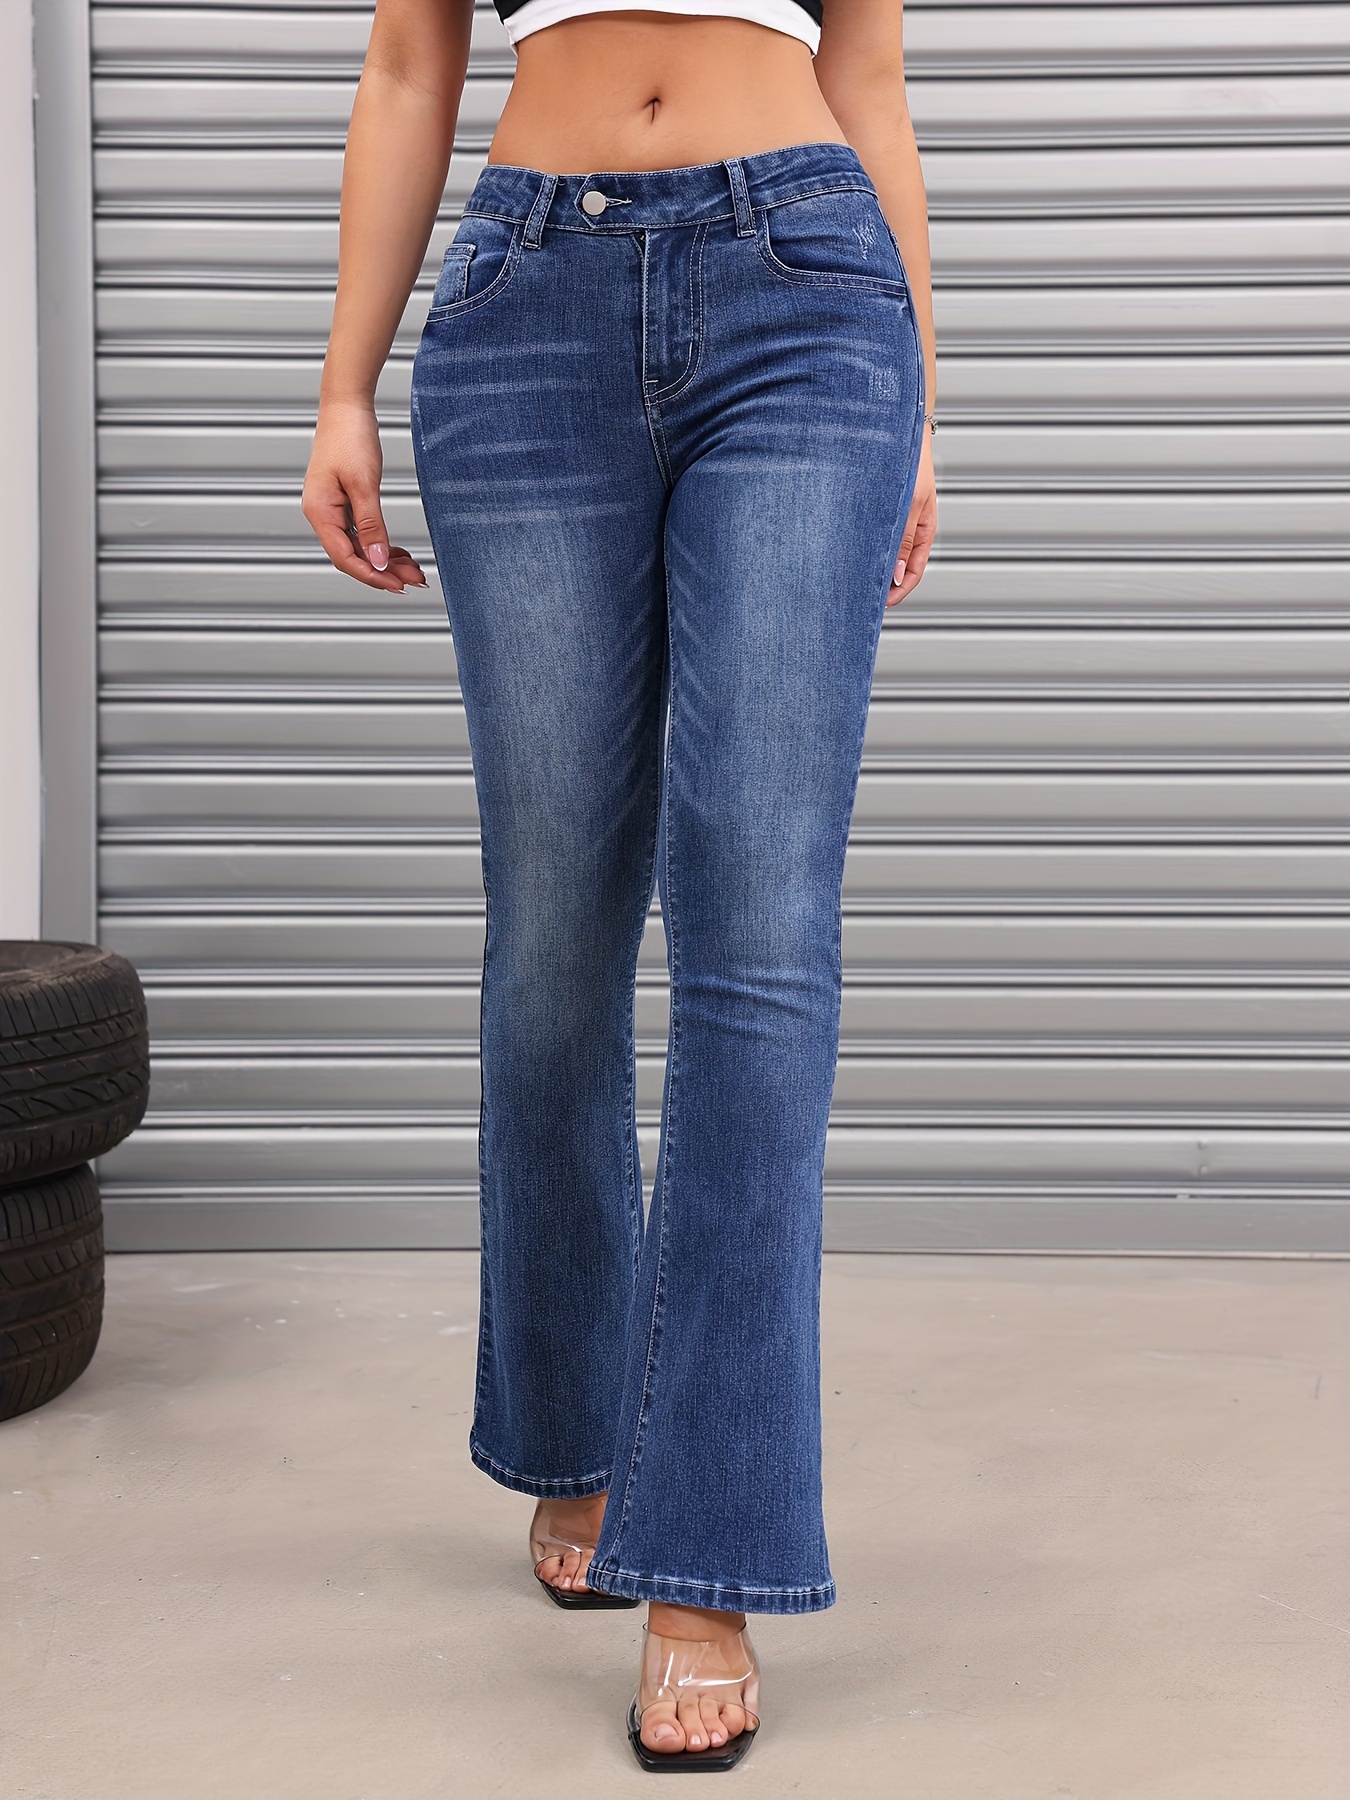 High Stretch Casual Bootcut Jeans, Slant Pockets Versatile Denim Pants,  Women's Denim Jeans & Clothing